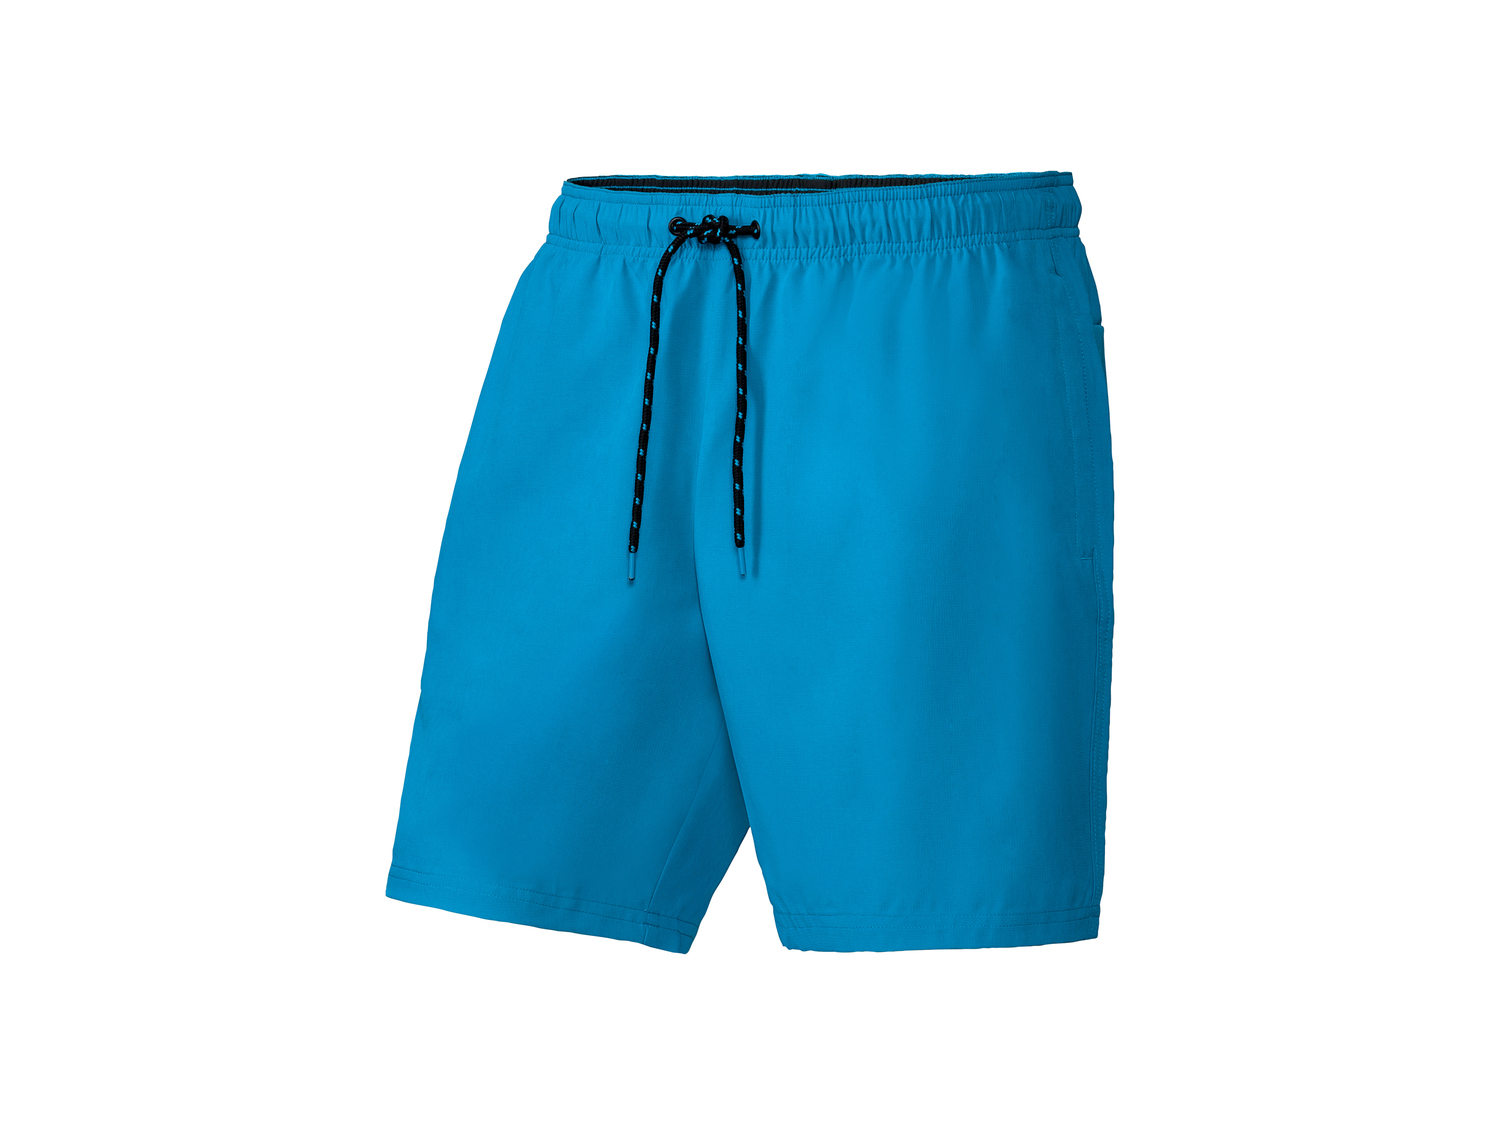 Shorts sportivi da uomo Crivit, prezzo 4.99 &#8364; 
Misure: S-XL
Taglie disponibili

Caratteristiche

- ...